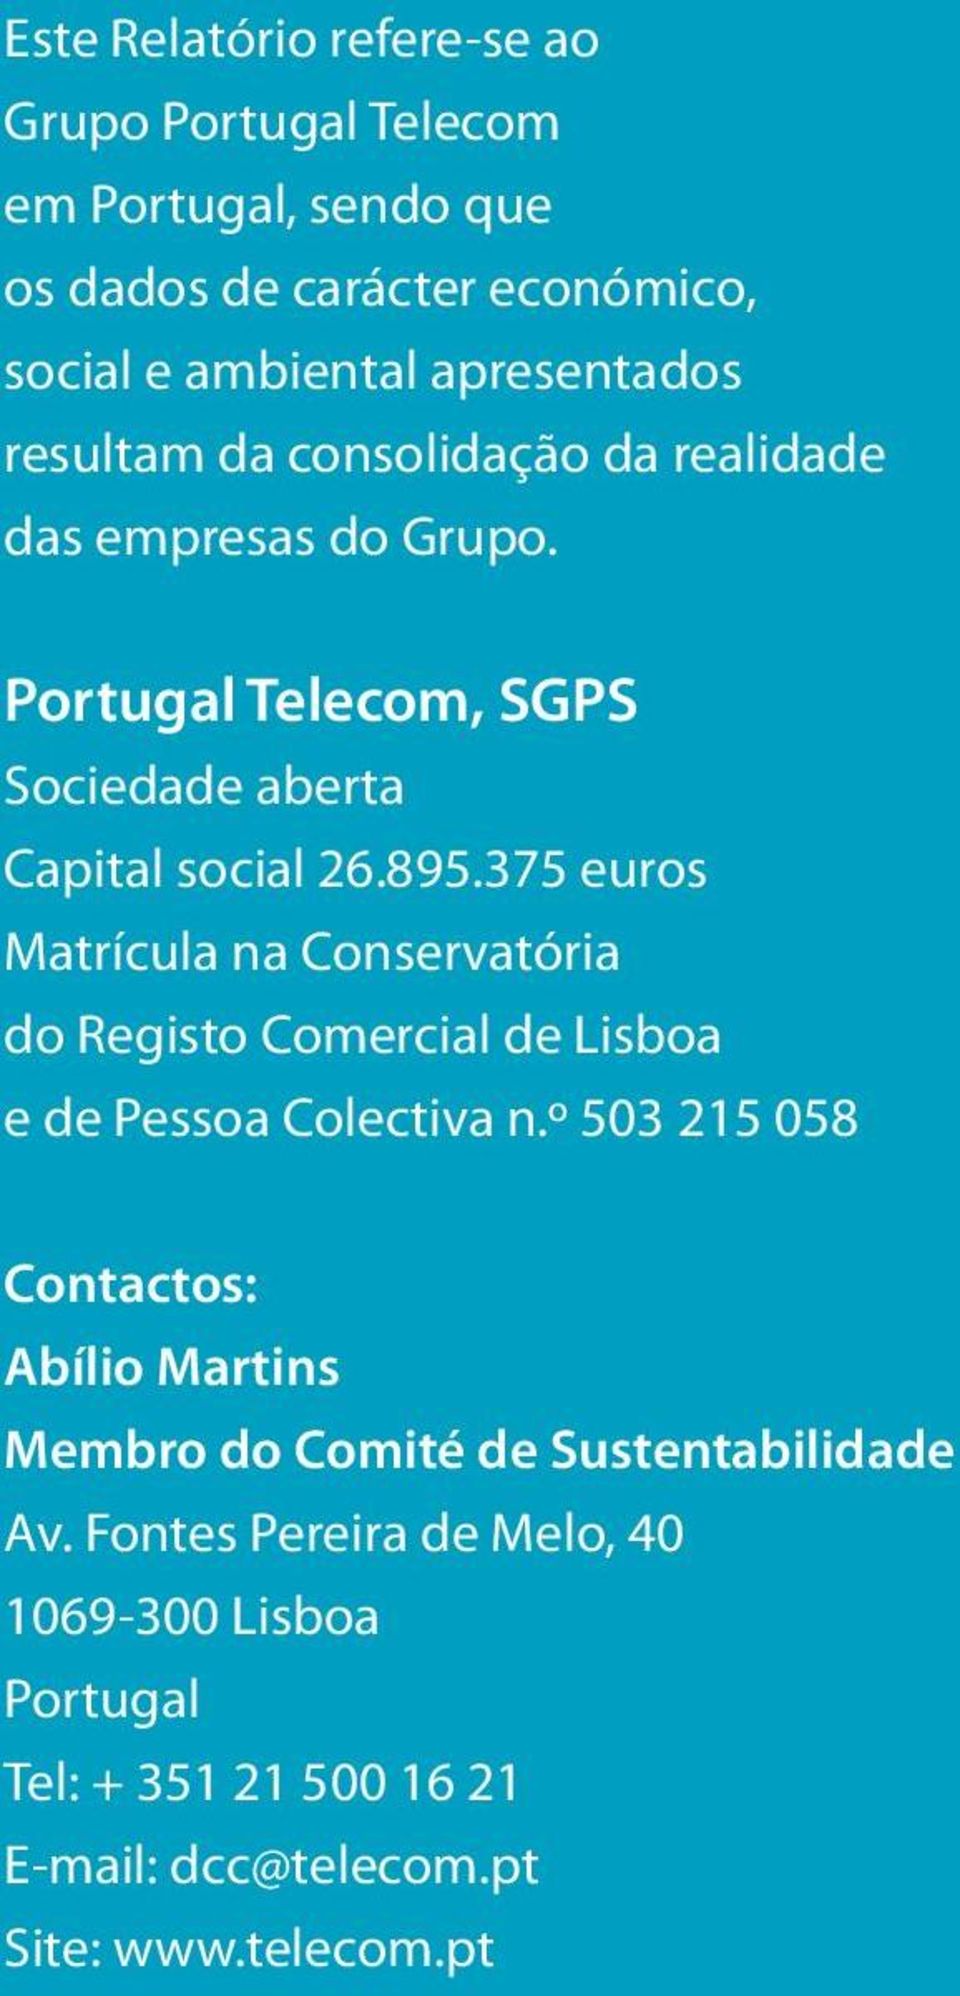 375 euros Matrícula na Conservatória do Registo Comercial de Lisboa e de Pessoa Colectiva n.